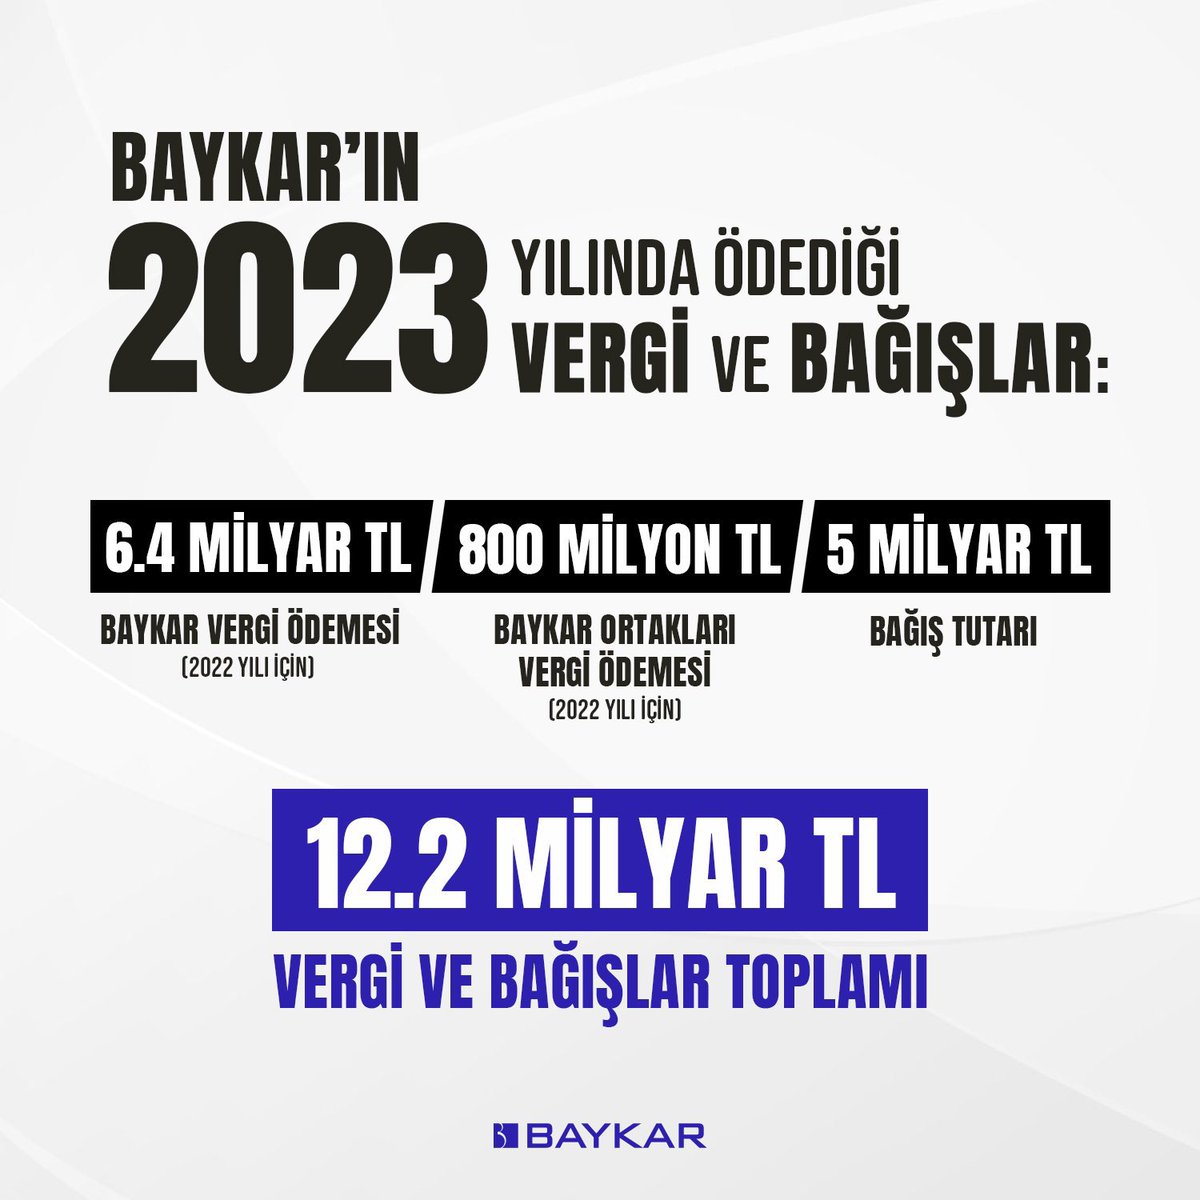 #SıkçaSorulanSorular Baykar vergi ödemiyor mu? Baykar 2023 yılında ülkemize vergi ve bağış yoluyla toplamda 12.2 milyar TL doğrudan katkı sağlamıştır. Baykar, 2023'te 6.4 milyar lira ile Türkiye'nin en yüksek vergi ödeyen firmalarından biri oldu. Ayrıca firma ortakları (Selçuk